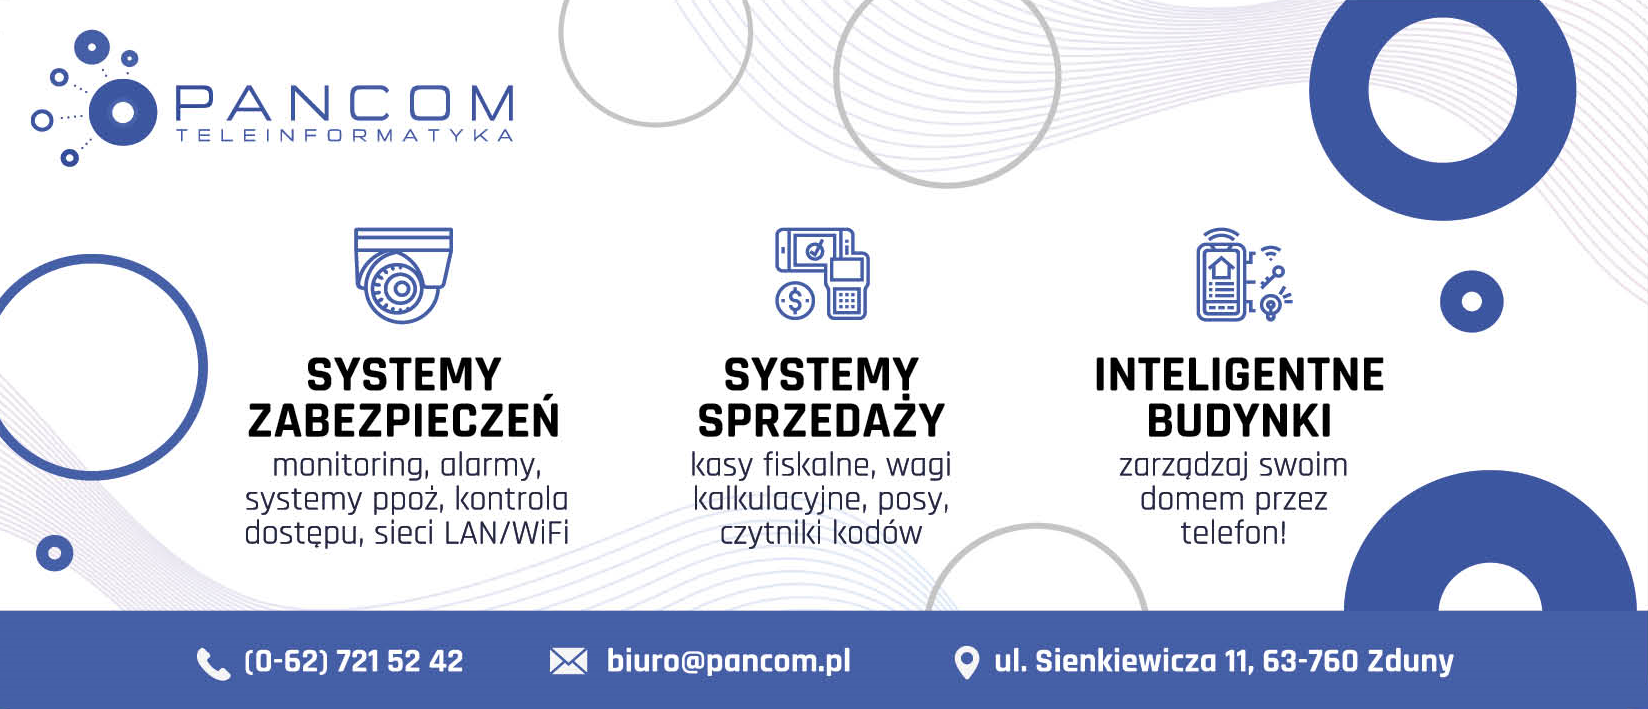 PANCOM Przemysław Panek Zduny Systemy Zabezpieczeń / Systemy Sprzedaży / Inteligentne Budynki